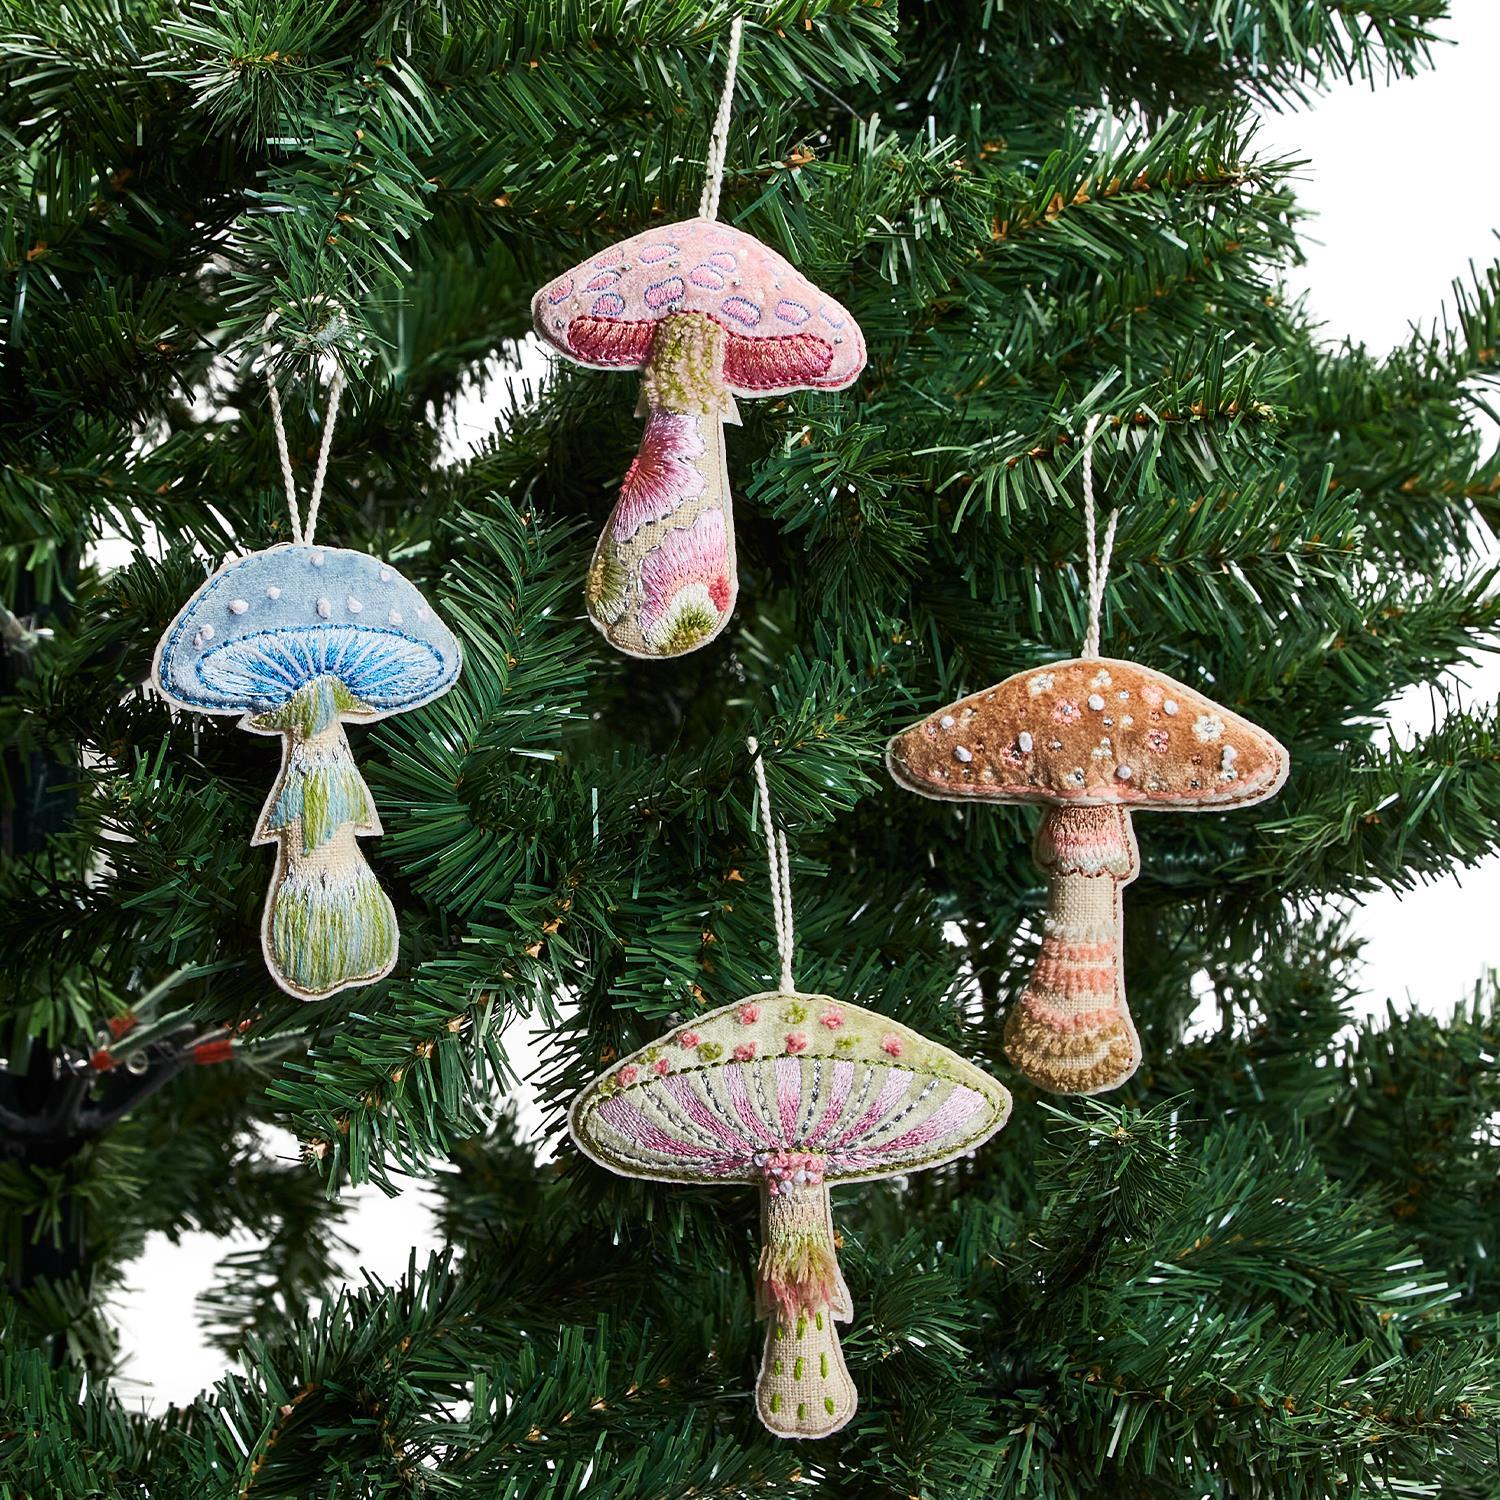 Embroidered Mushroom Ornament